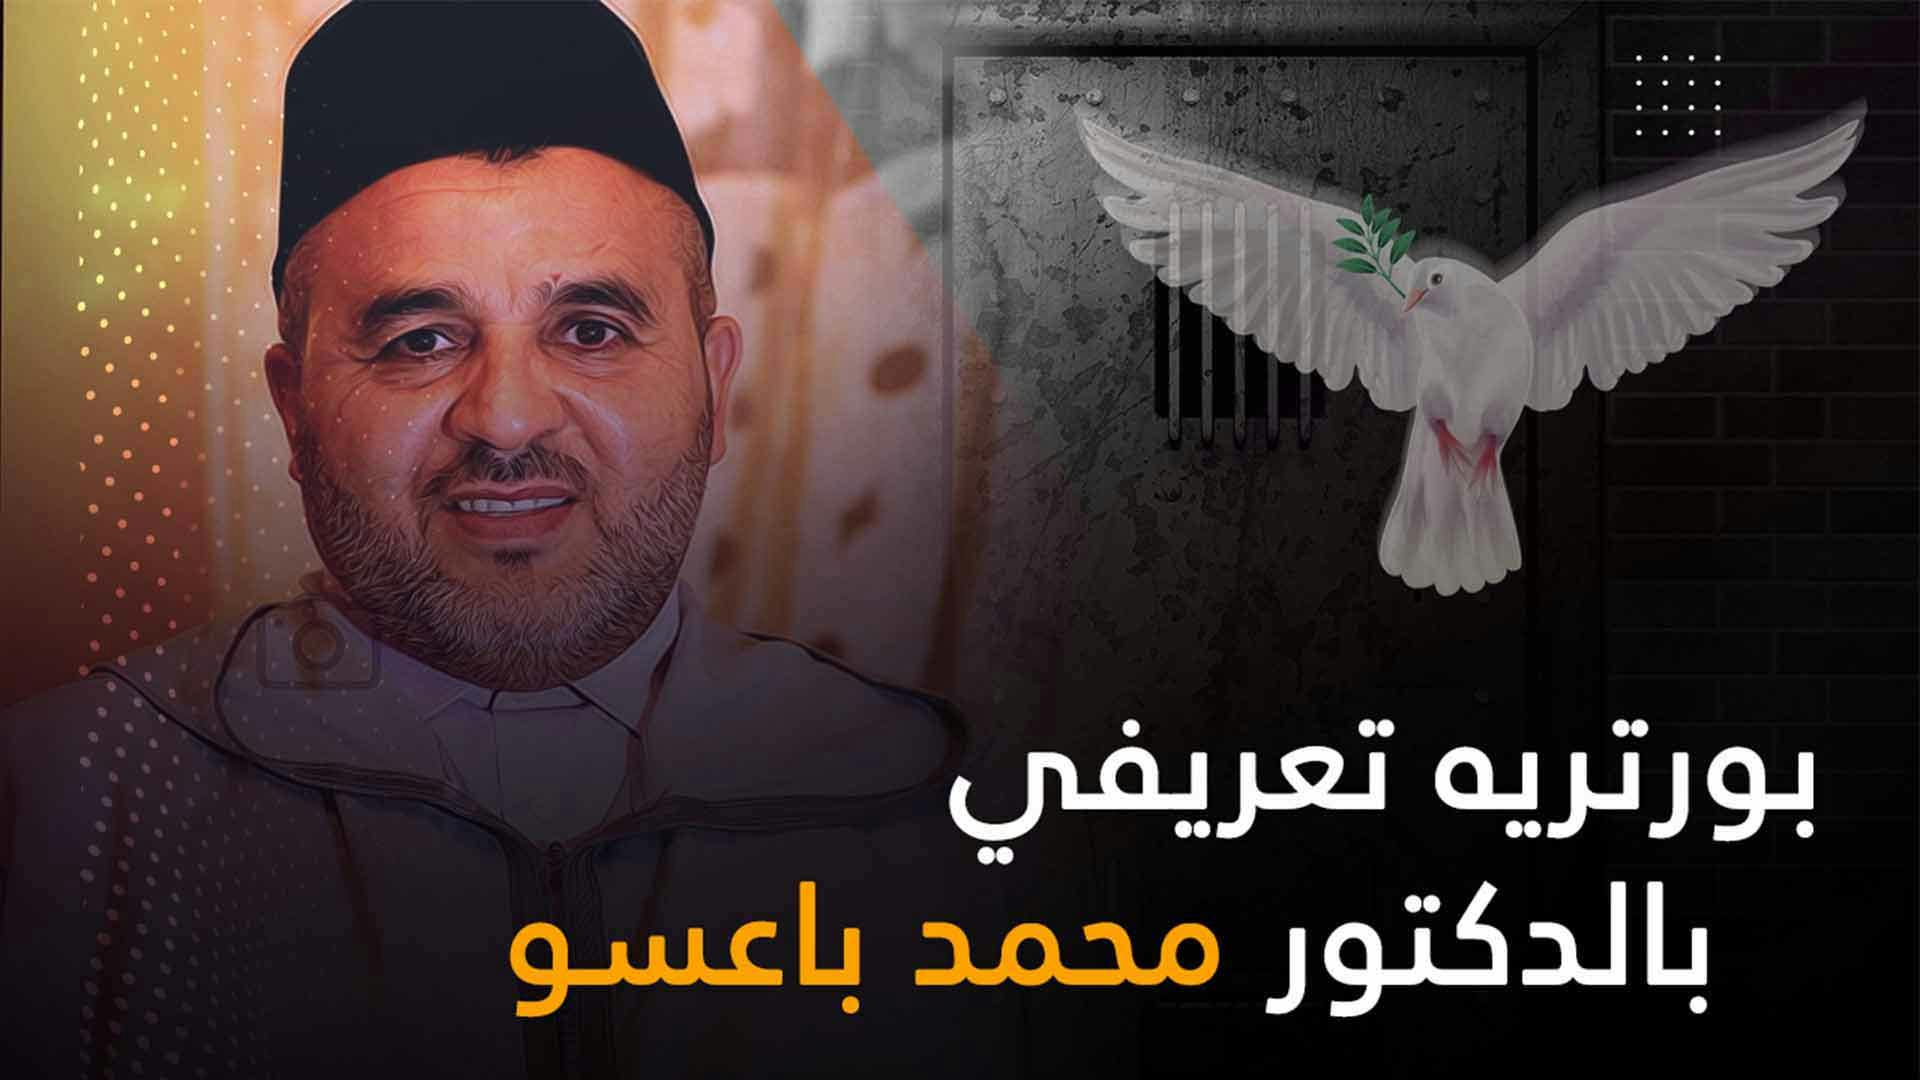 Cover Image for بورتريه تعريفي بالمعتقل السياسي الدكتور محمد أعراب باعسو